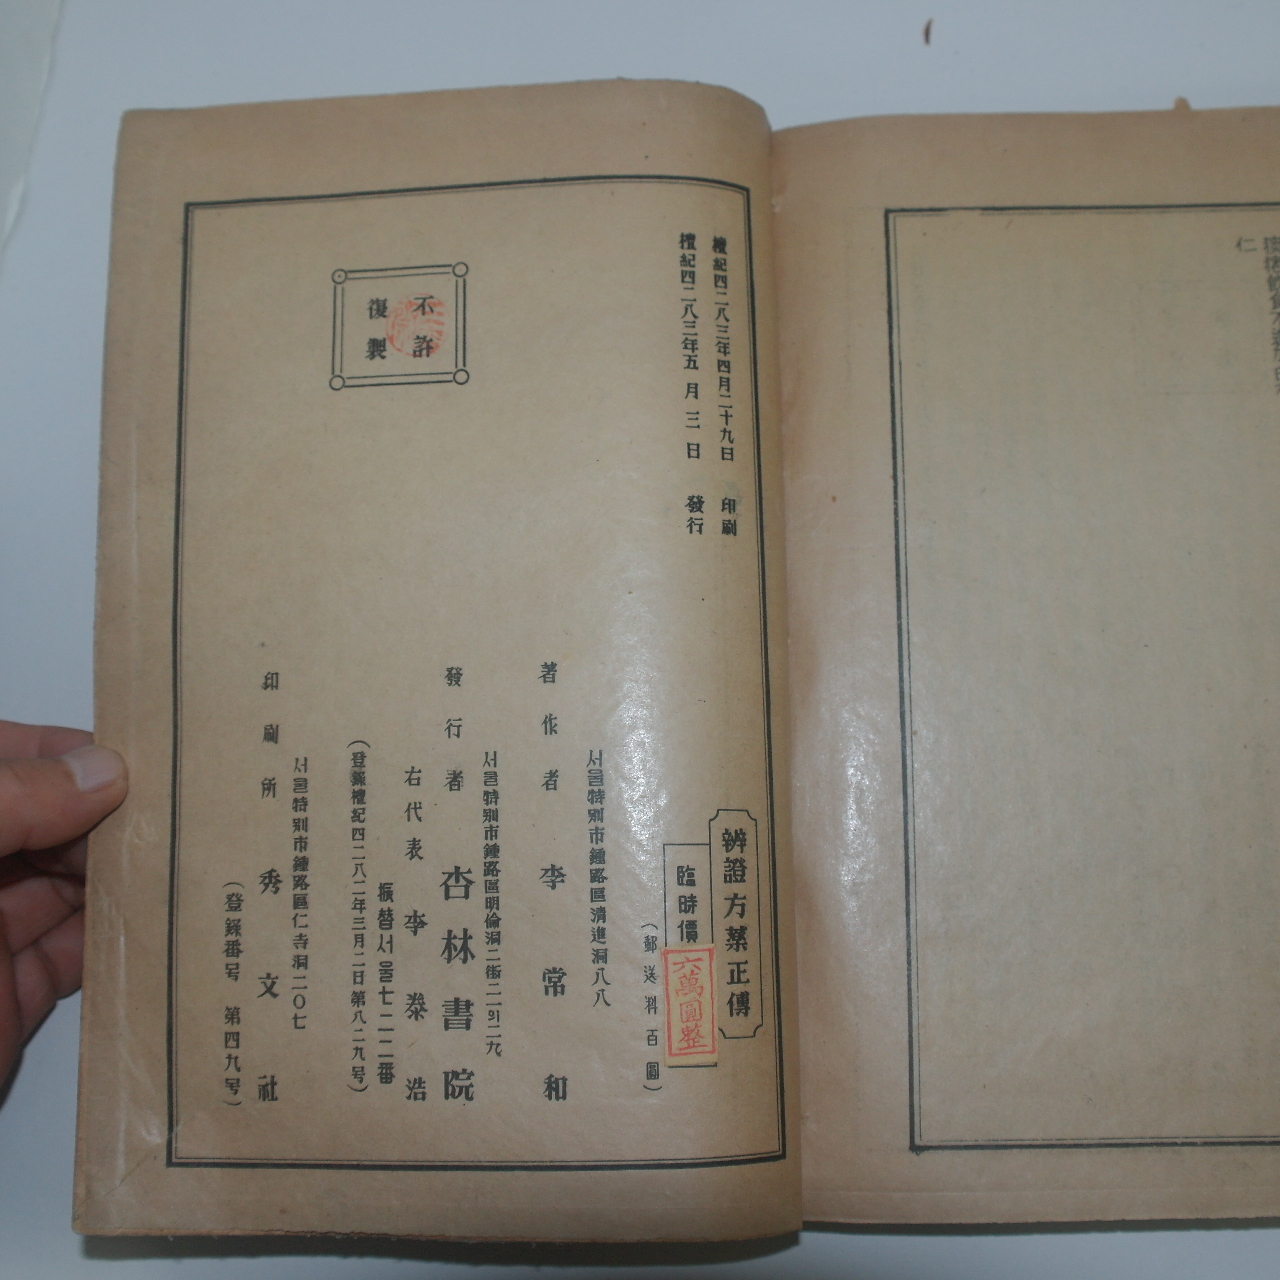 1950년(단기4283년) 의서 이상화(李常和) 변증방약정전(辨證方藥正傳)1책완질